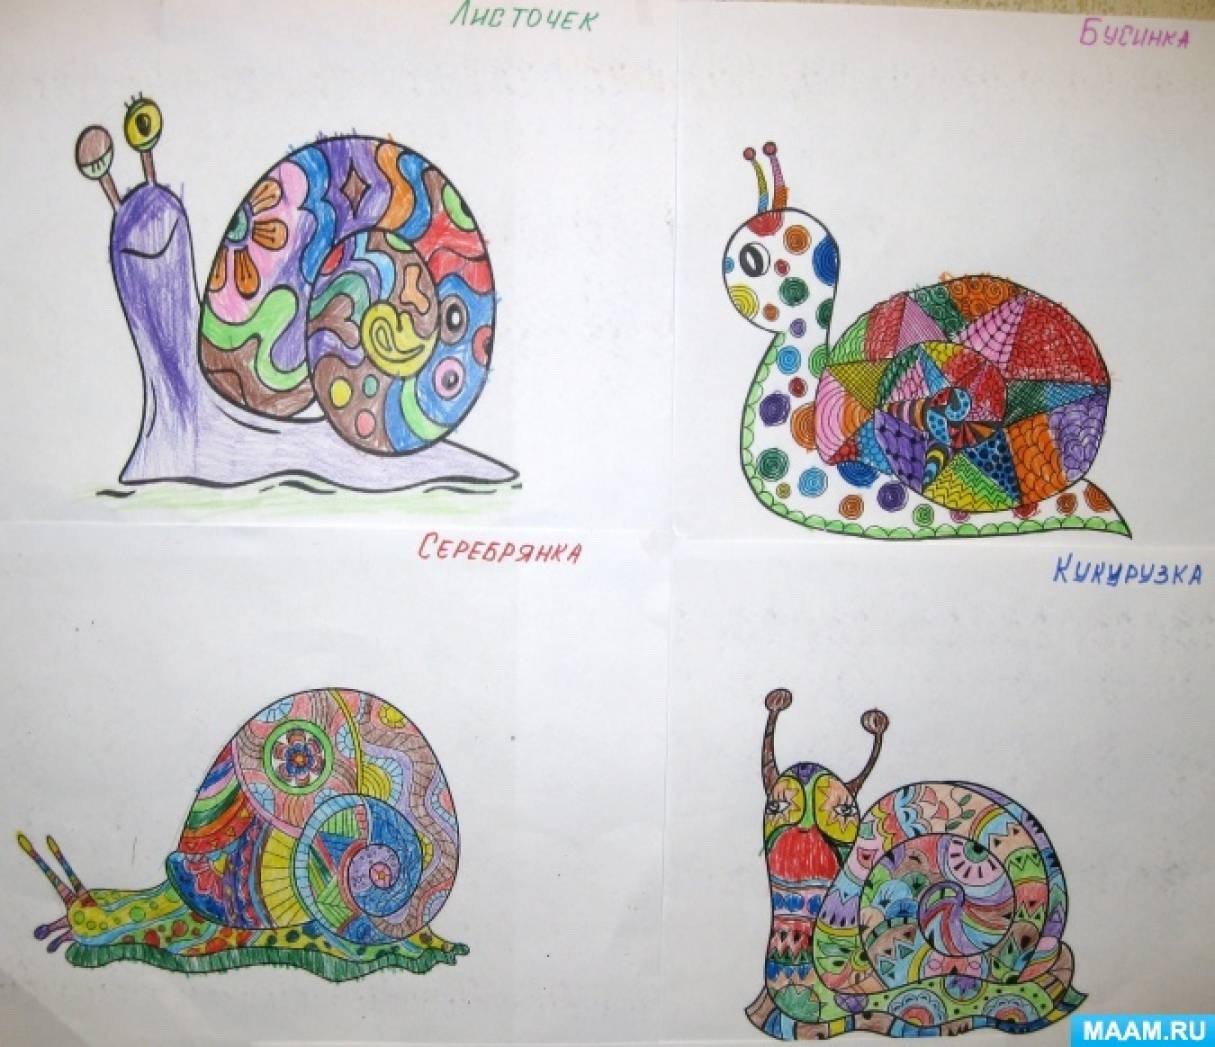 Улитка — картинки, рисунки и фото для детей